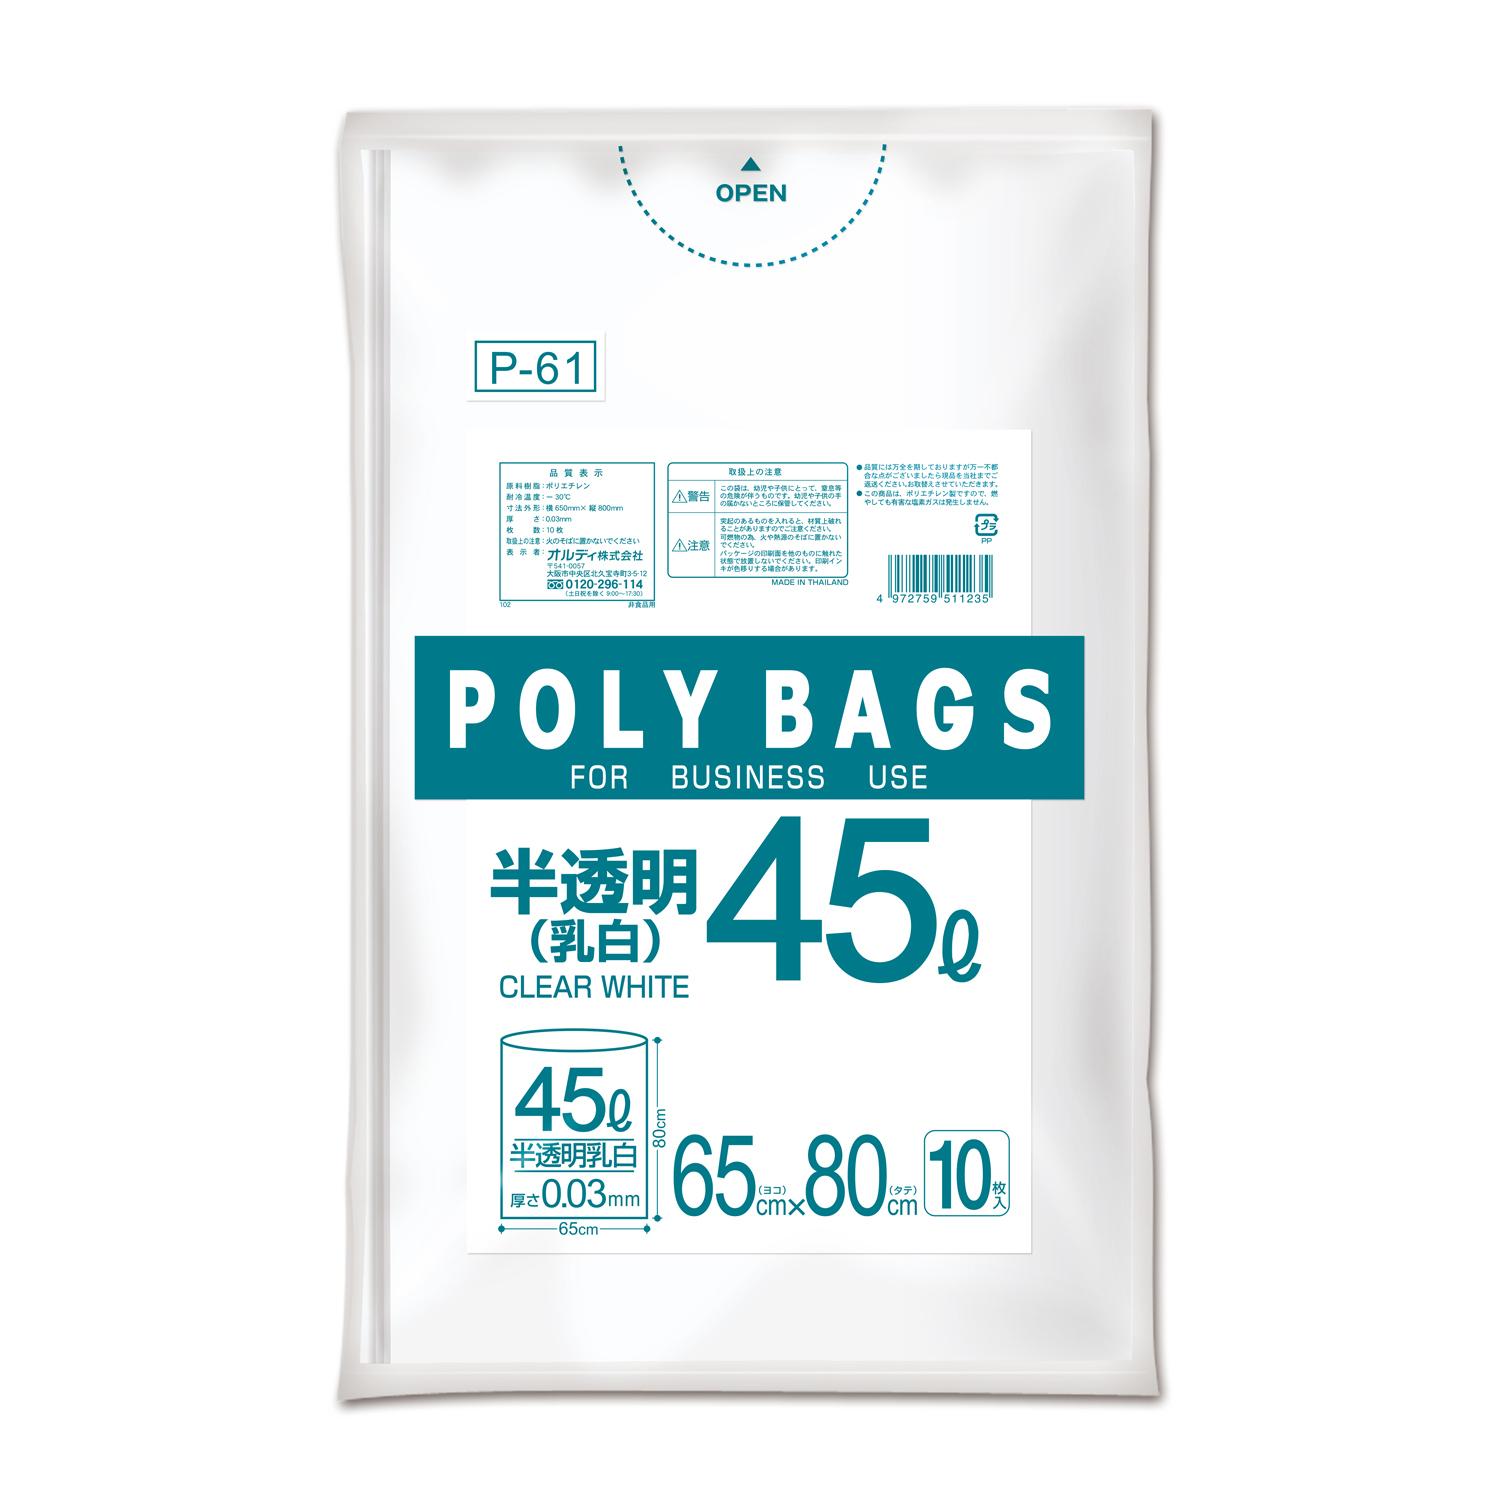 ポリバッグシリーズ | ポリ袋/ごみ袋メーカー直販サイト【オルディ